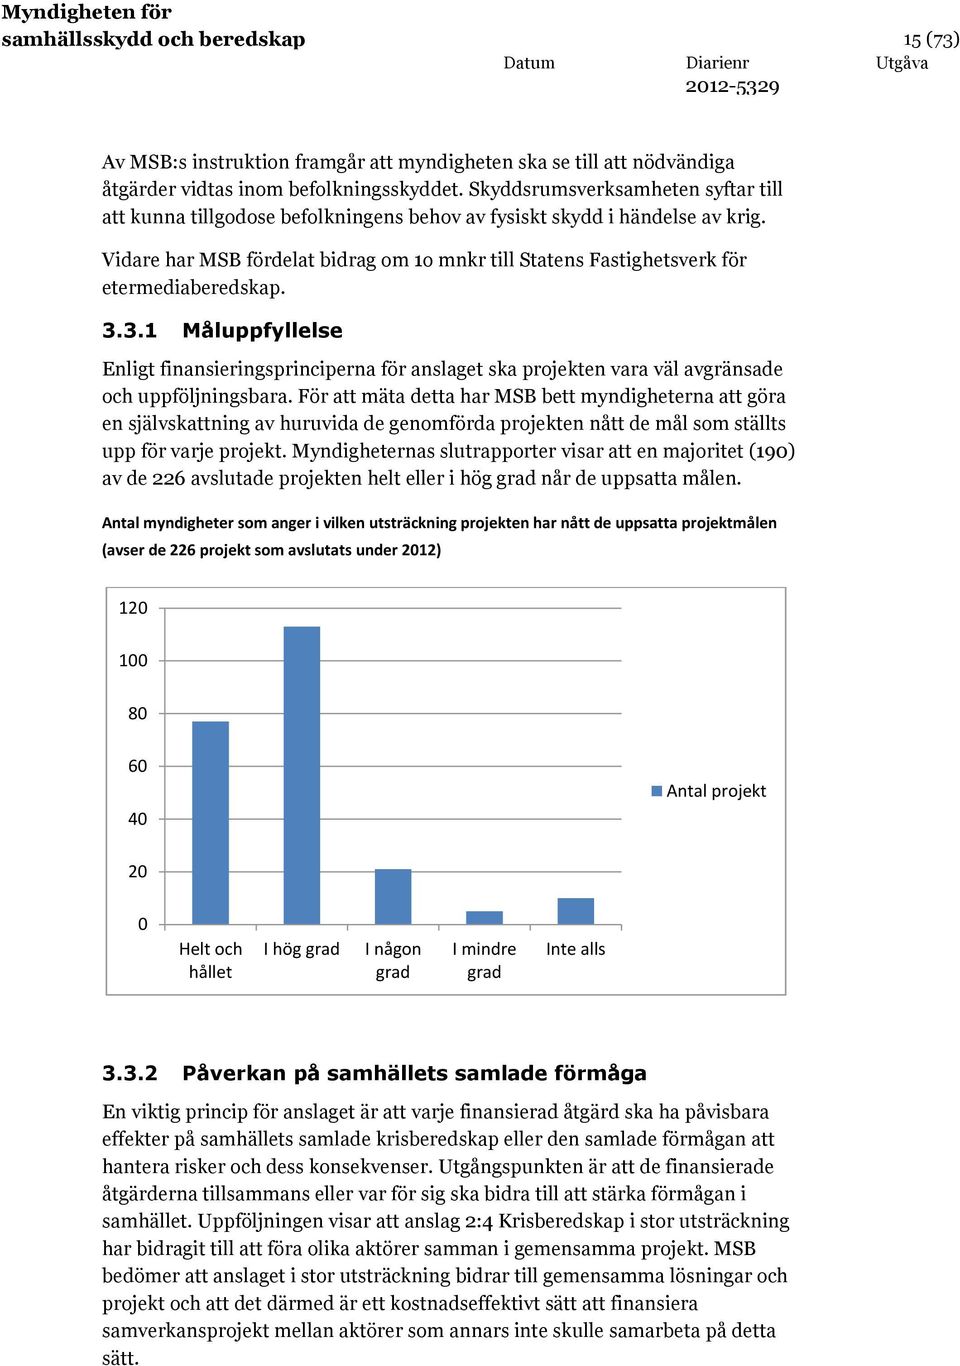 Vidare har MSB fördelat bidrag om 1o mnkr till Statens Fastighetsverk för etermediaberedskap. 3.